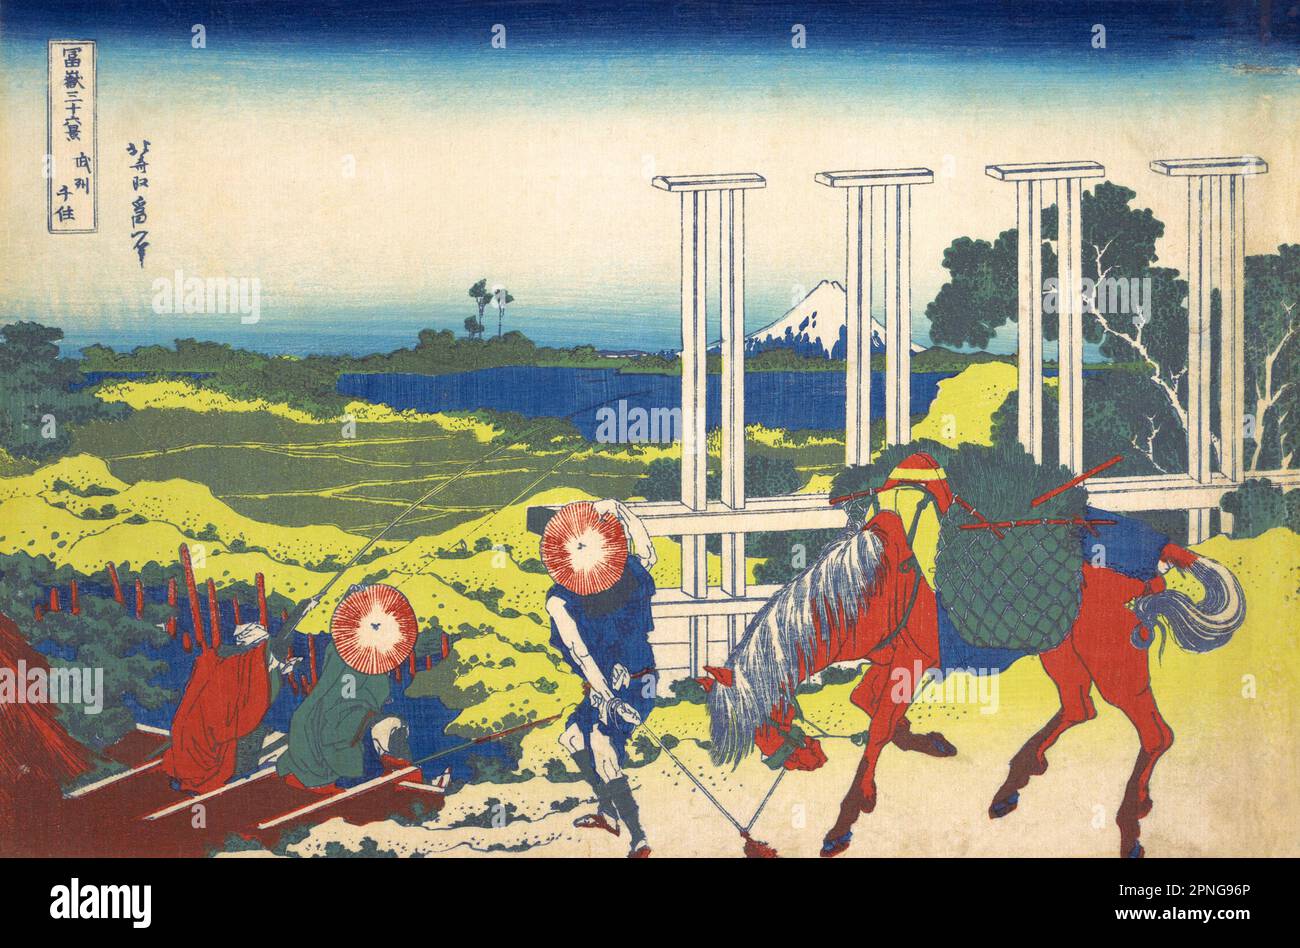 Japan: ‘Senju in der Provinz Musashi’. Ukiyo-e Holzschnitt aus der Serie ‘Thirty-Six views of Mount Fuji’ von Katsushika Hokusai (31. Oktober 1760 - 10. Mai 1849), 1830. ‘Thirty-Six Views of Mount Fuji’ ist eine Serie von Holzschnitten der japanischen Künstlerin Katsushika Hokusai, die „Sukiyo-e“ ‘. Die Serie zeigt den Fuji in unterschiedlichen Jahreszeiten und Wetterbedingungen an verschiedenen Orten und Entfernungen. Es besteht tatsächlich aus 46 Drucken, die zwischen 1826 und 1833 entstanden sind. Die ersten 36 wurden in die Originalpublikation aufgenommen, und aufgrund ihrer Popularität wurden nach der Originalpublikation 10 weitere hinzugefügt. Stockfoto